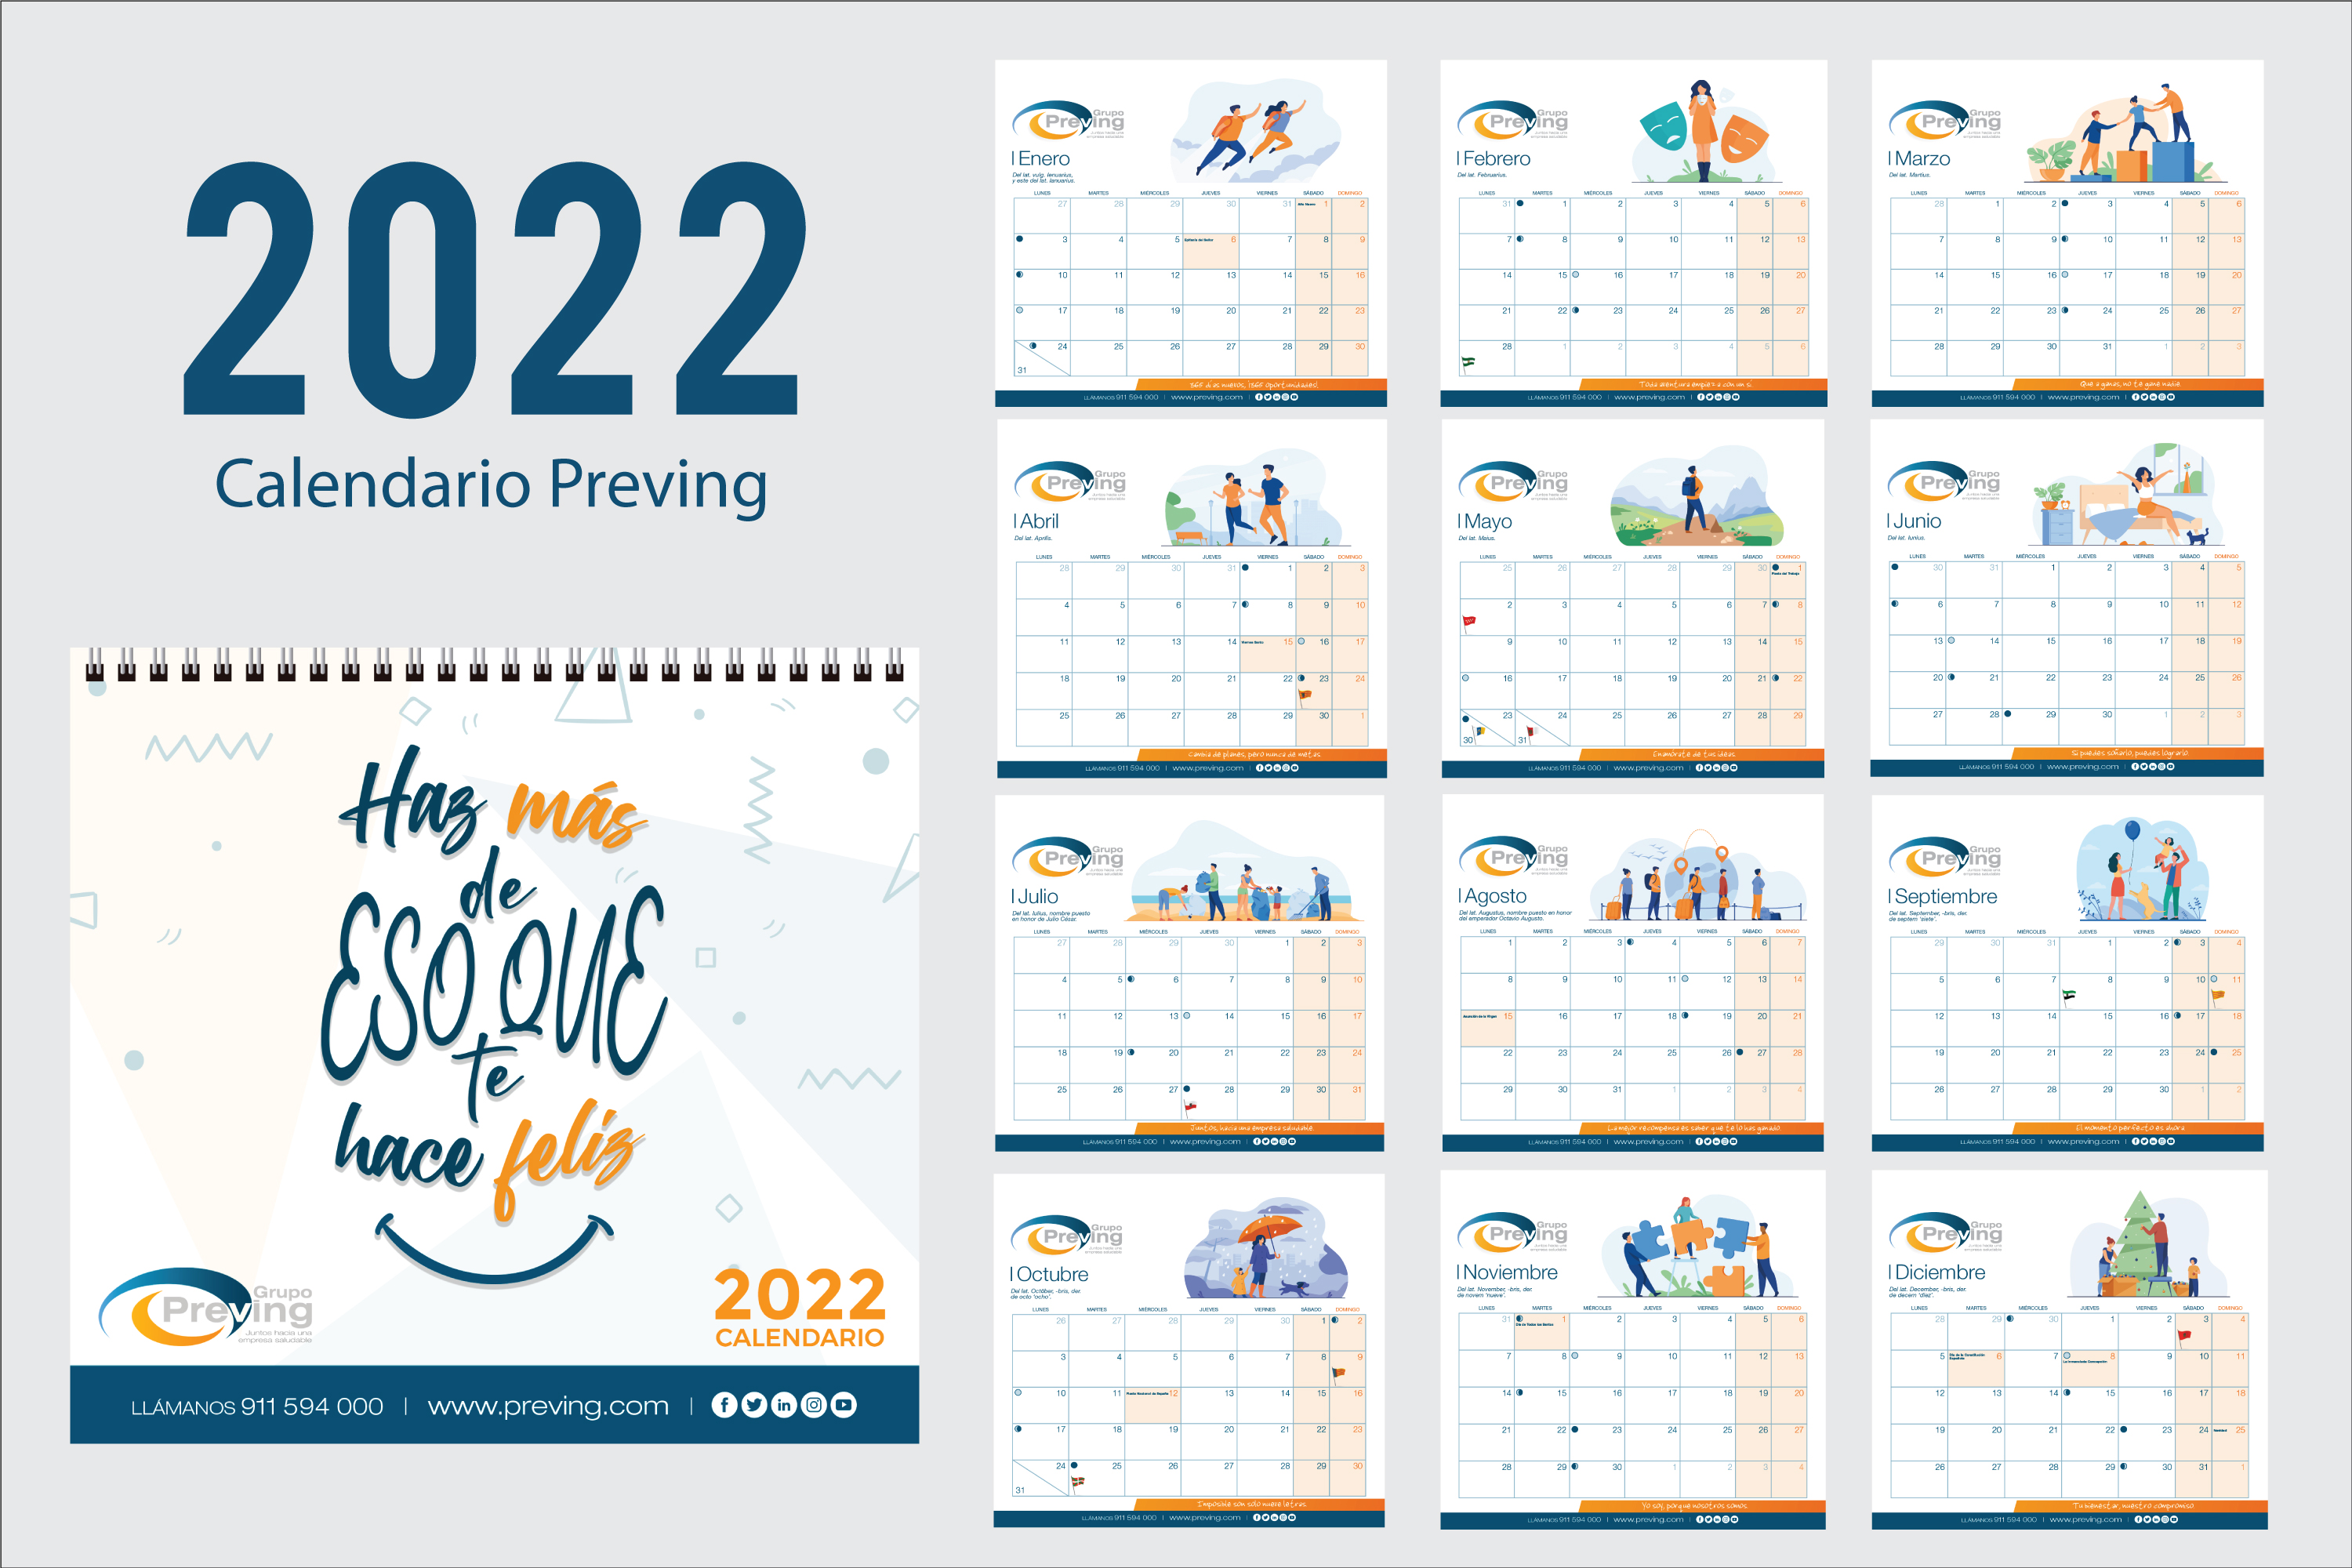 Calendario Preving 2022 versión castellano, doce meses del año